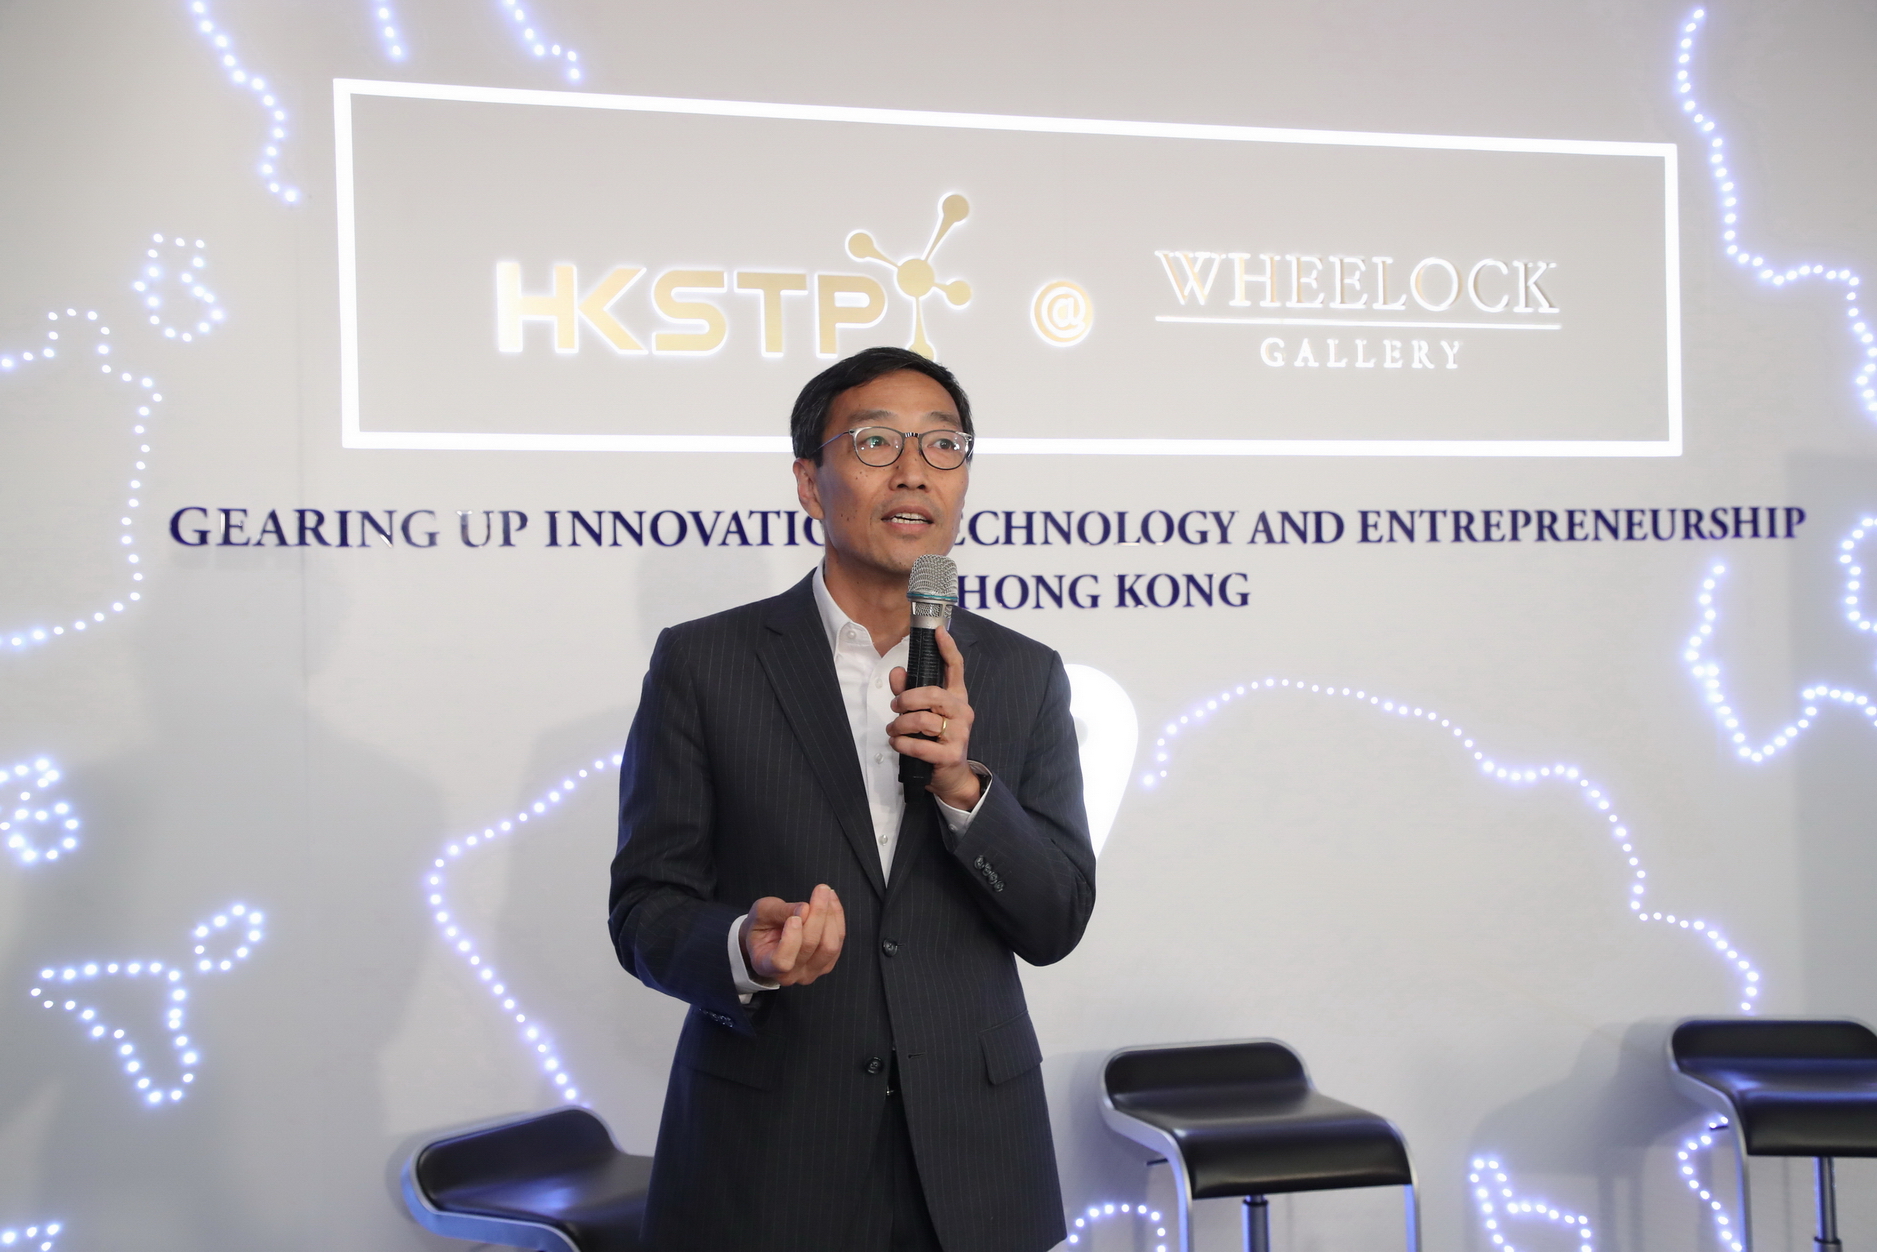 香港科技園公司行政總裁黃克強期望藉著HKSTP @Wheelock Gallery，擴大支援至科學園園內及園外的科技初創企業，更預告未來將會有更多活動於「HKSTP @Wheelock Gallery」舉行。